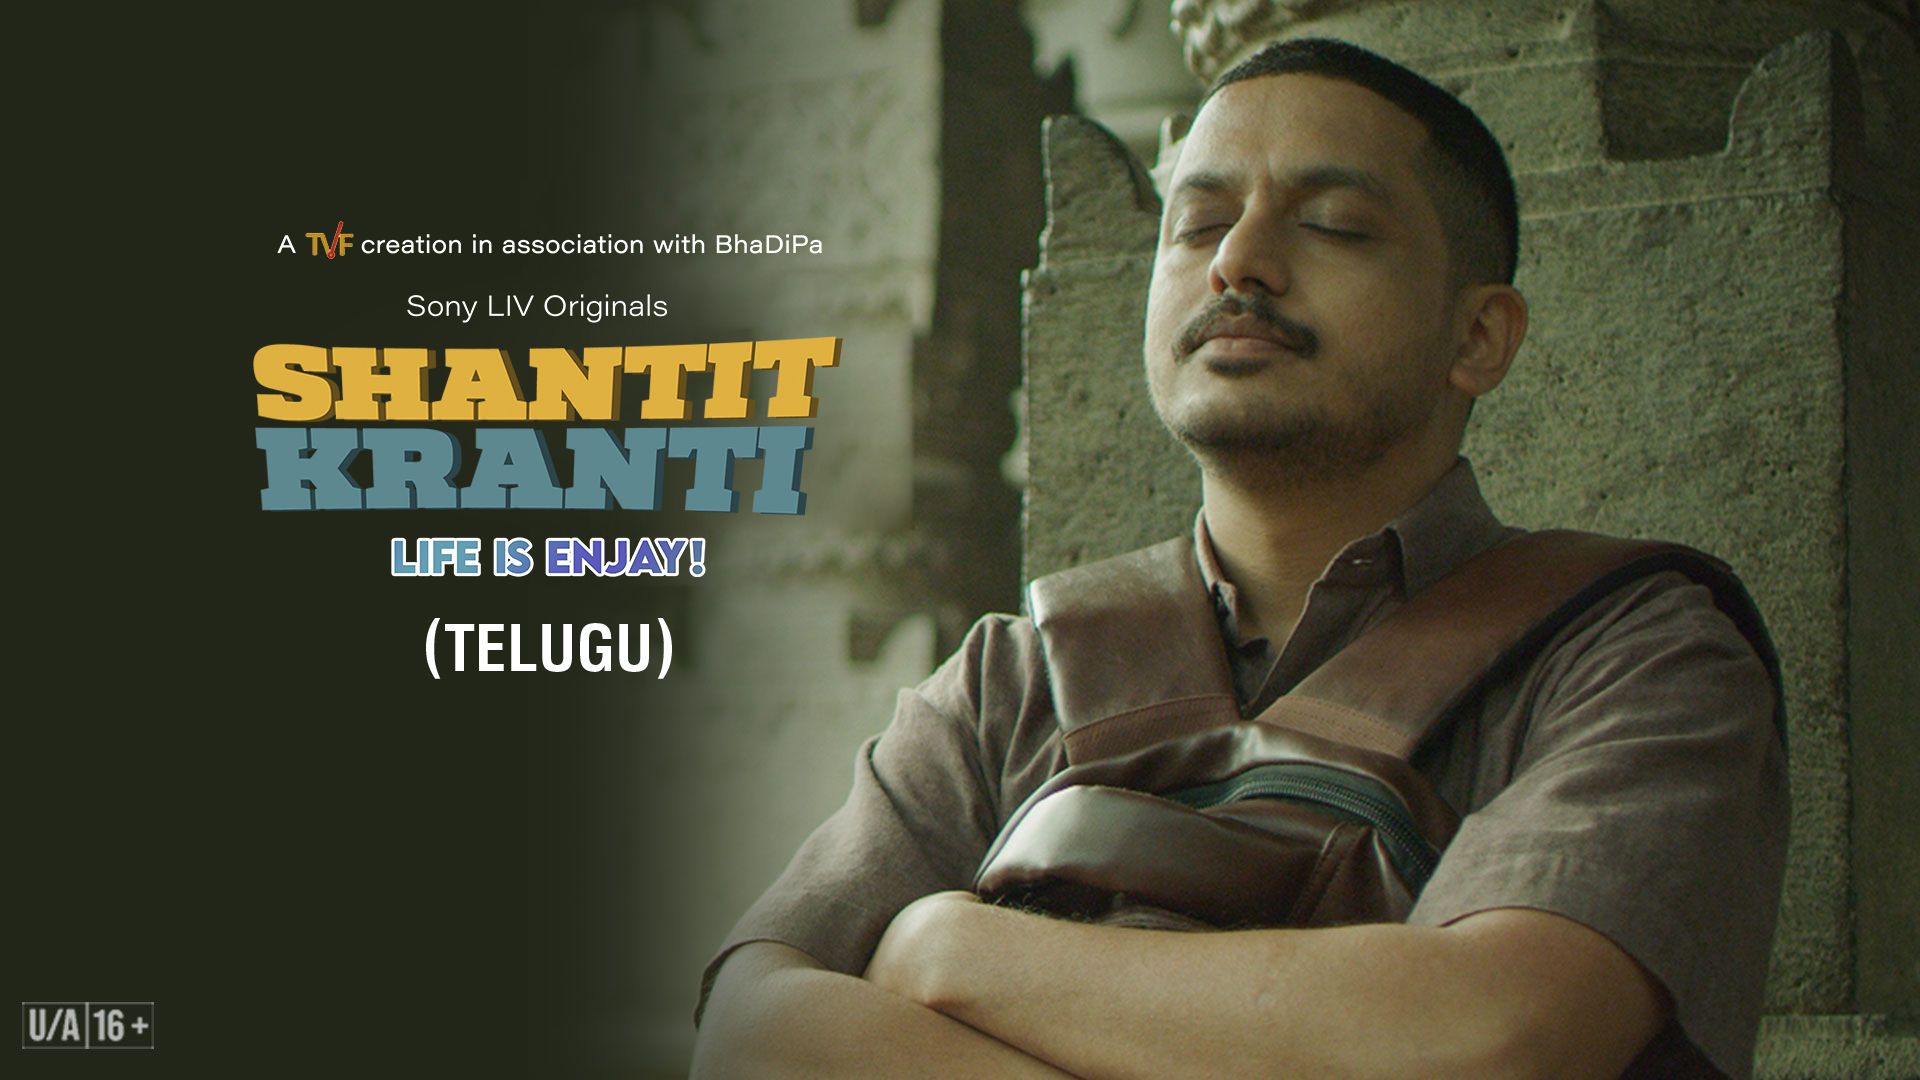 Shantit Kranti (Telugu)